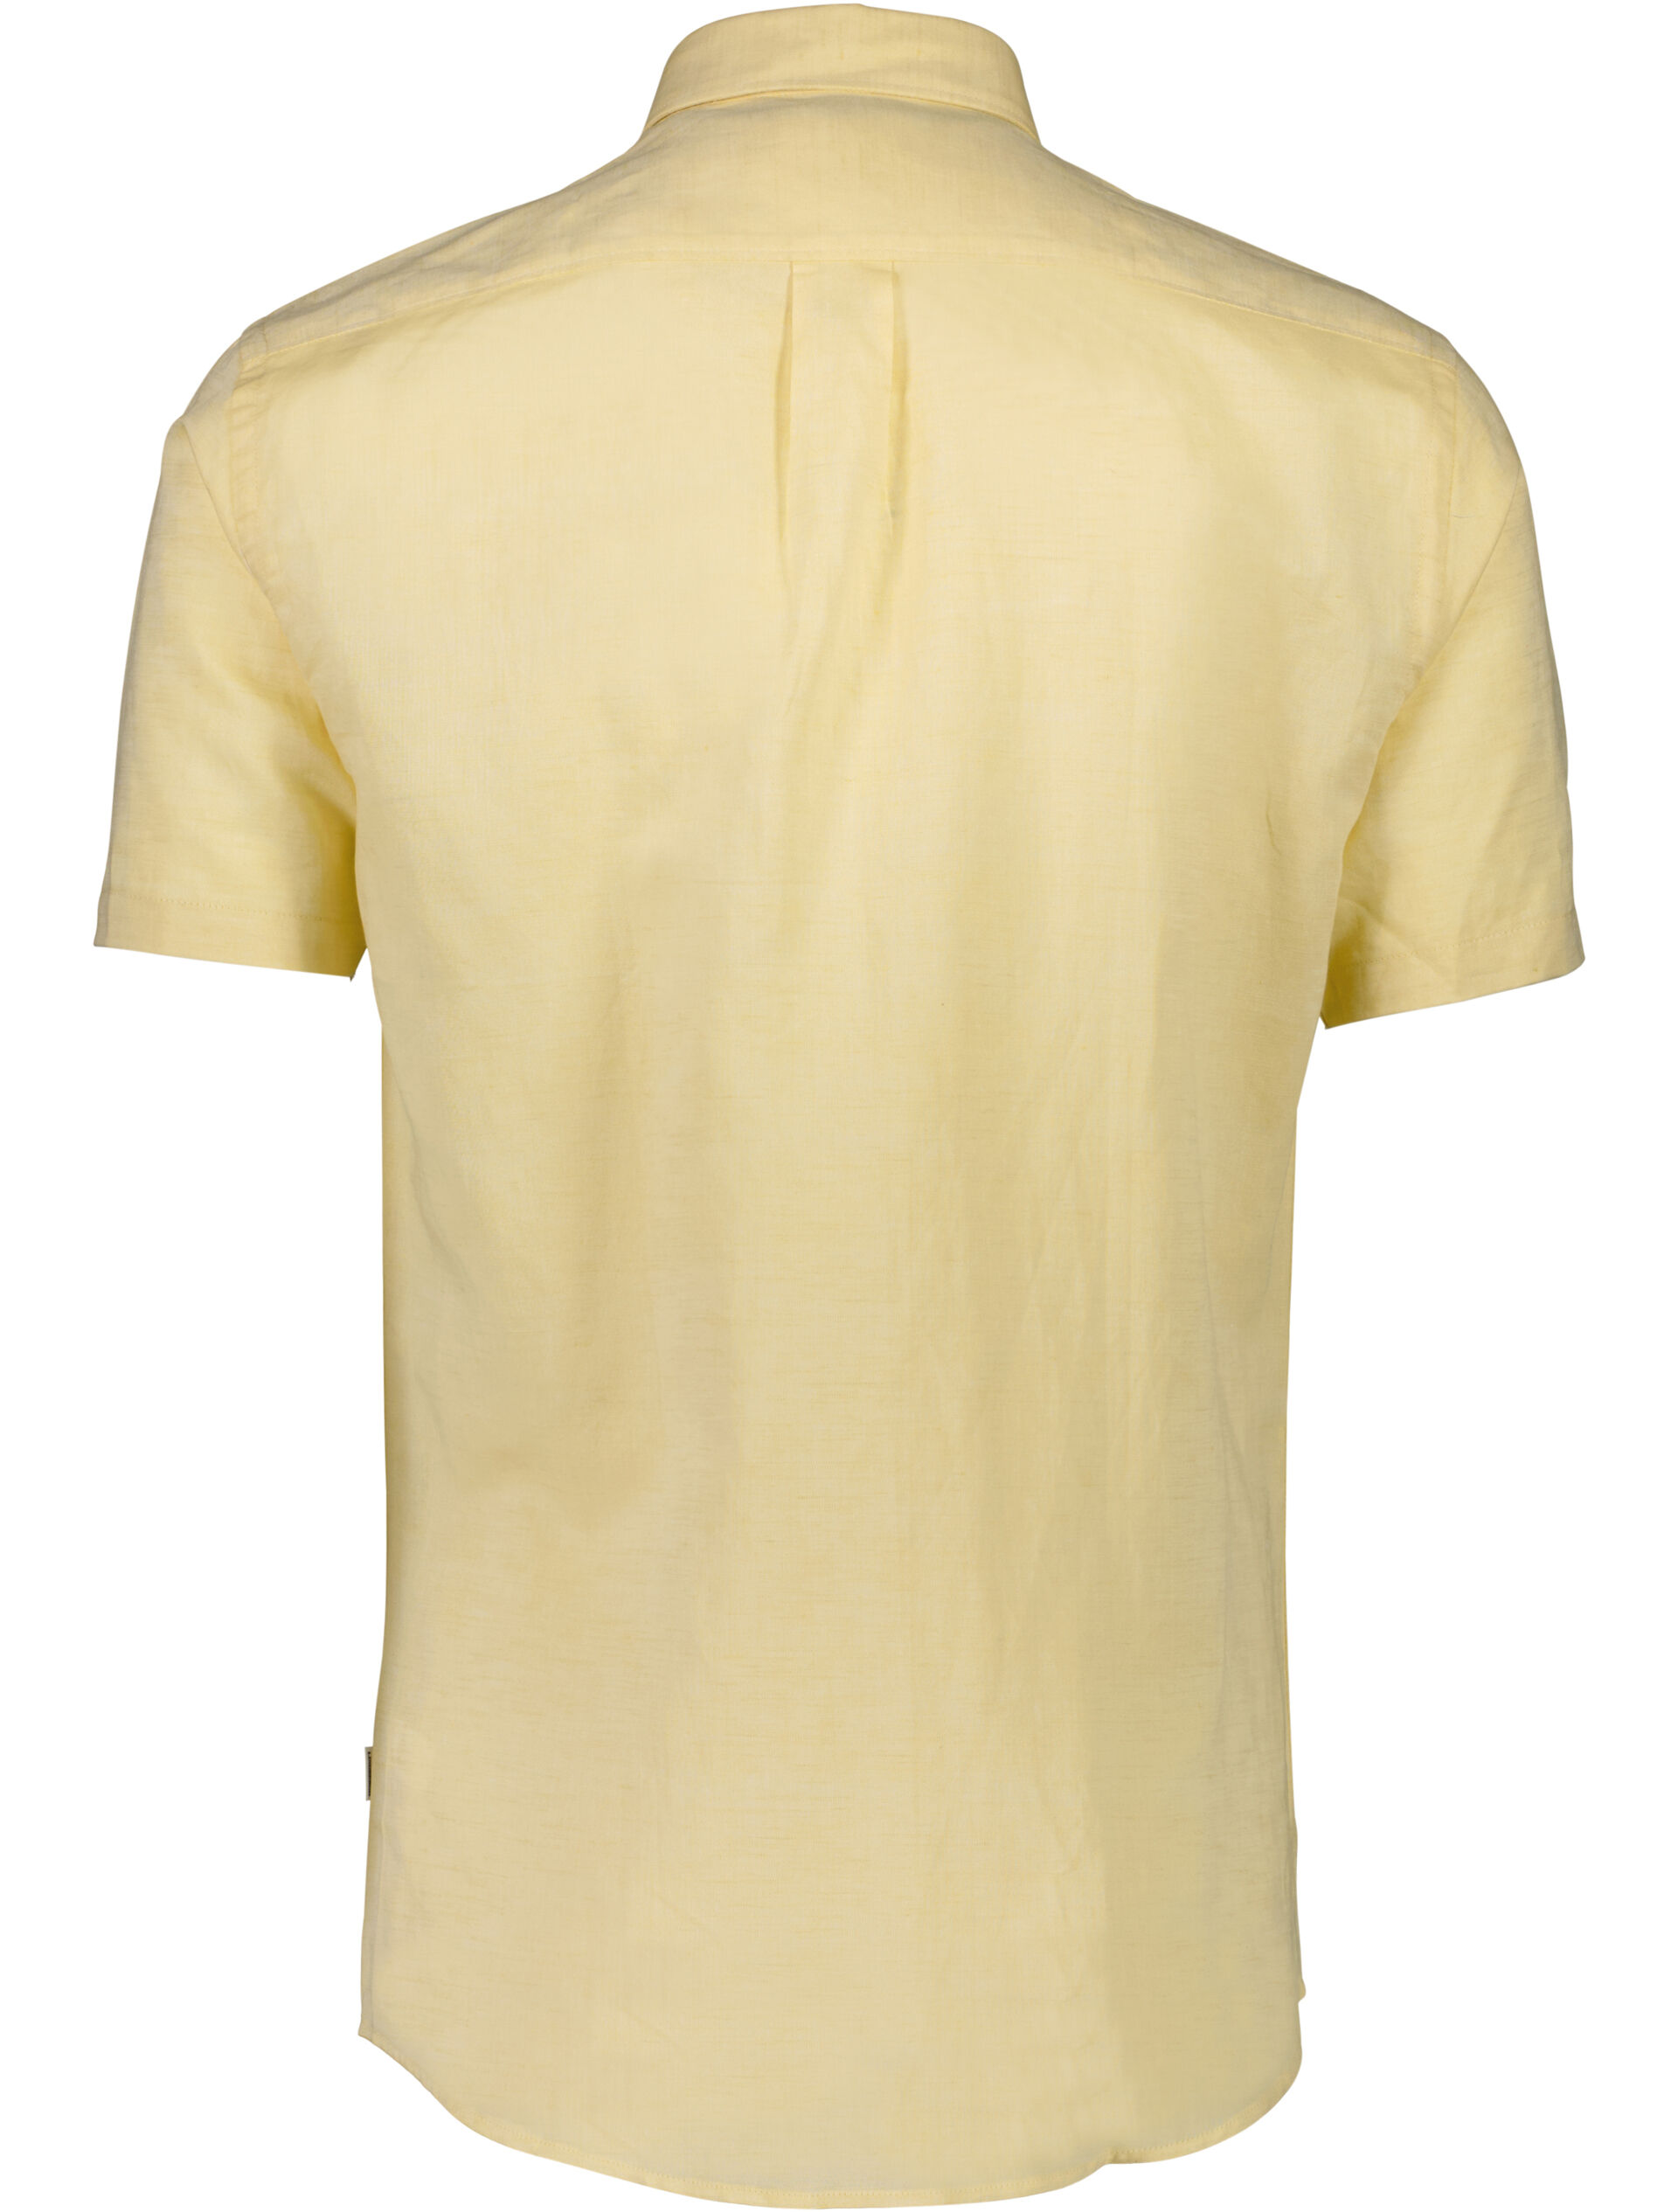 Linen shirt 30-203345A